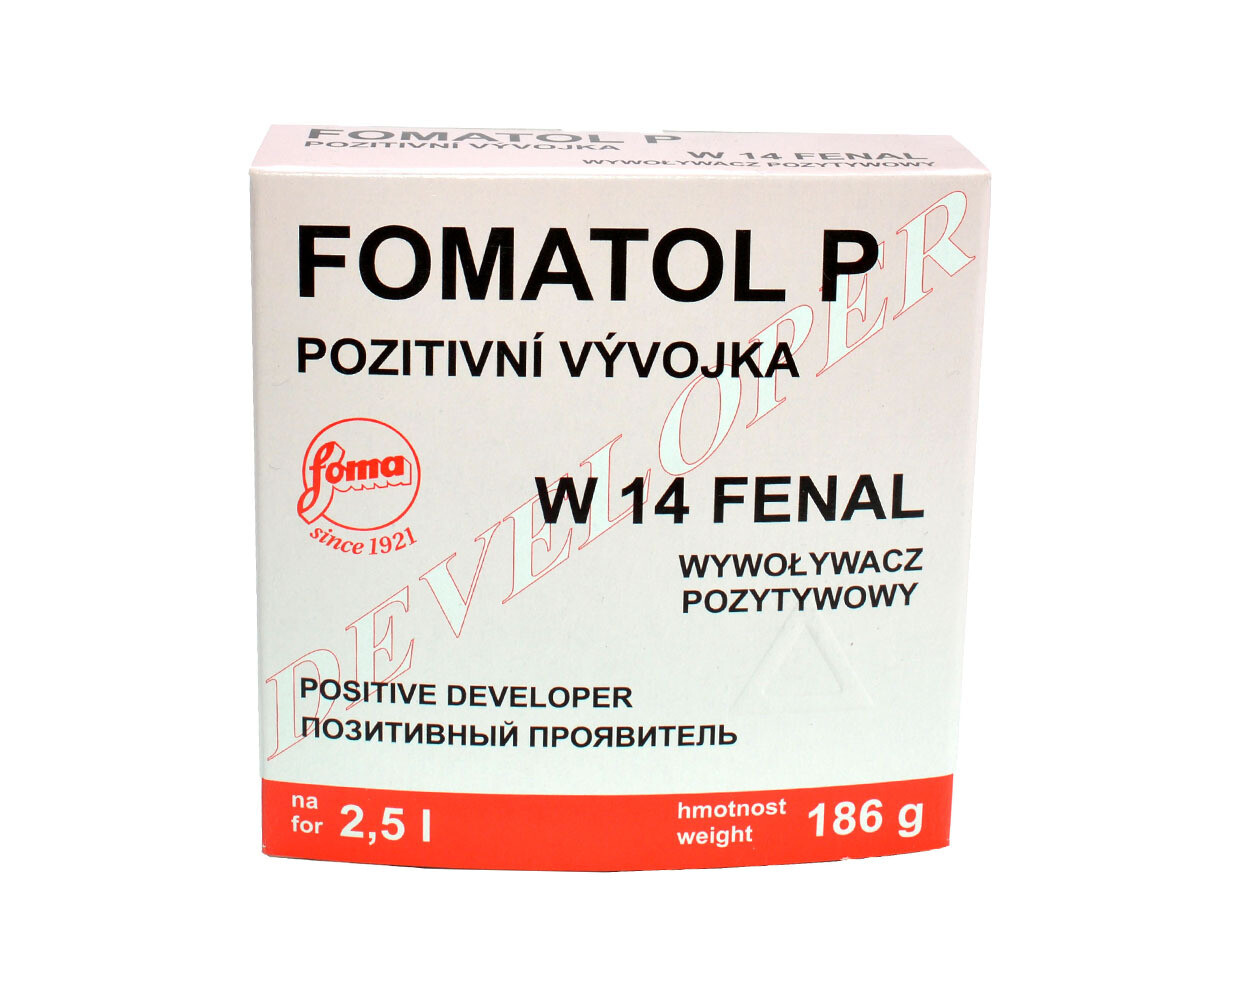 Fomatol Powder P W14 neutralton Papierentwickler für 2,5L